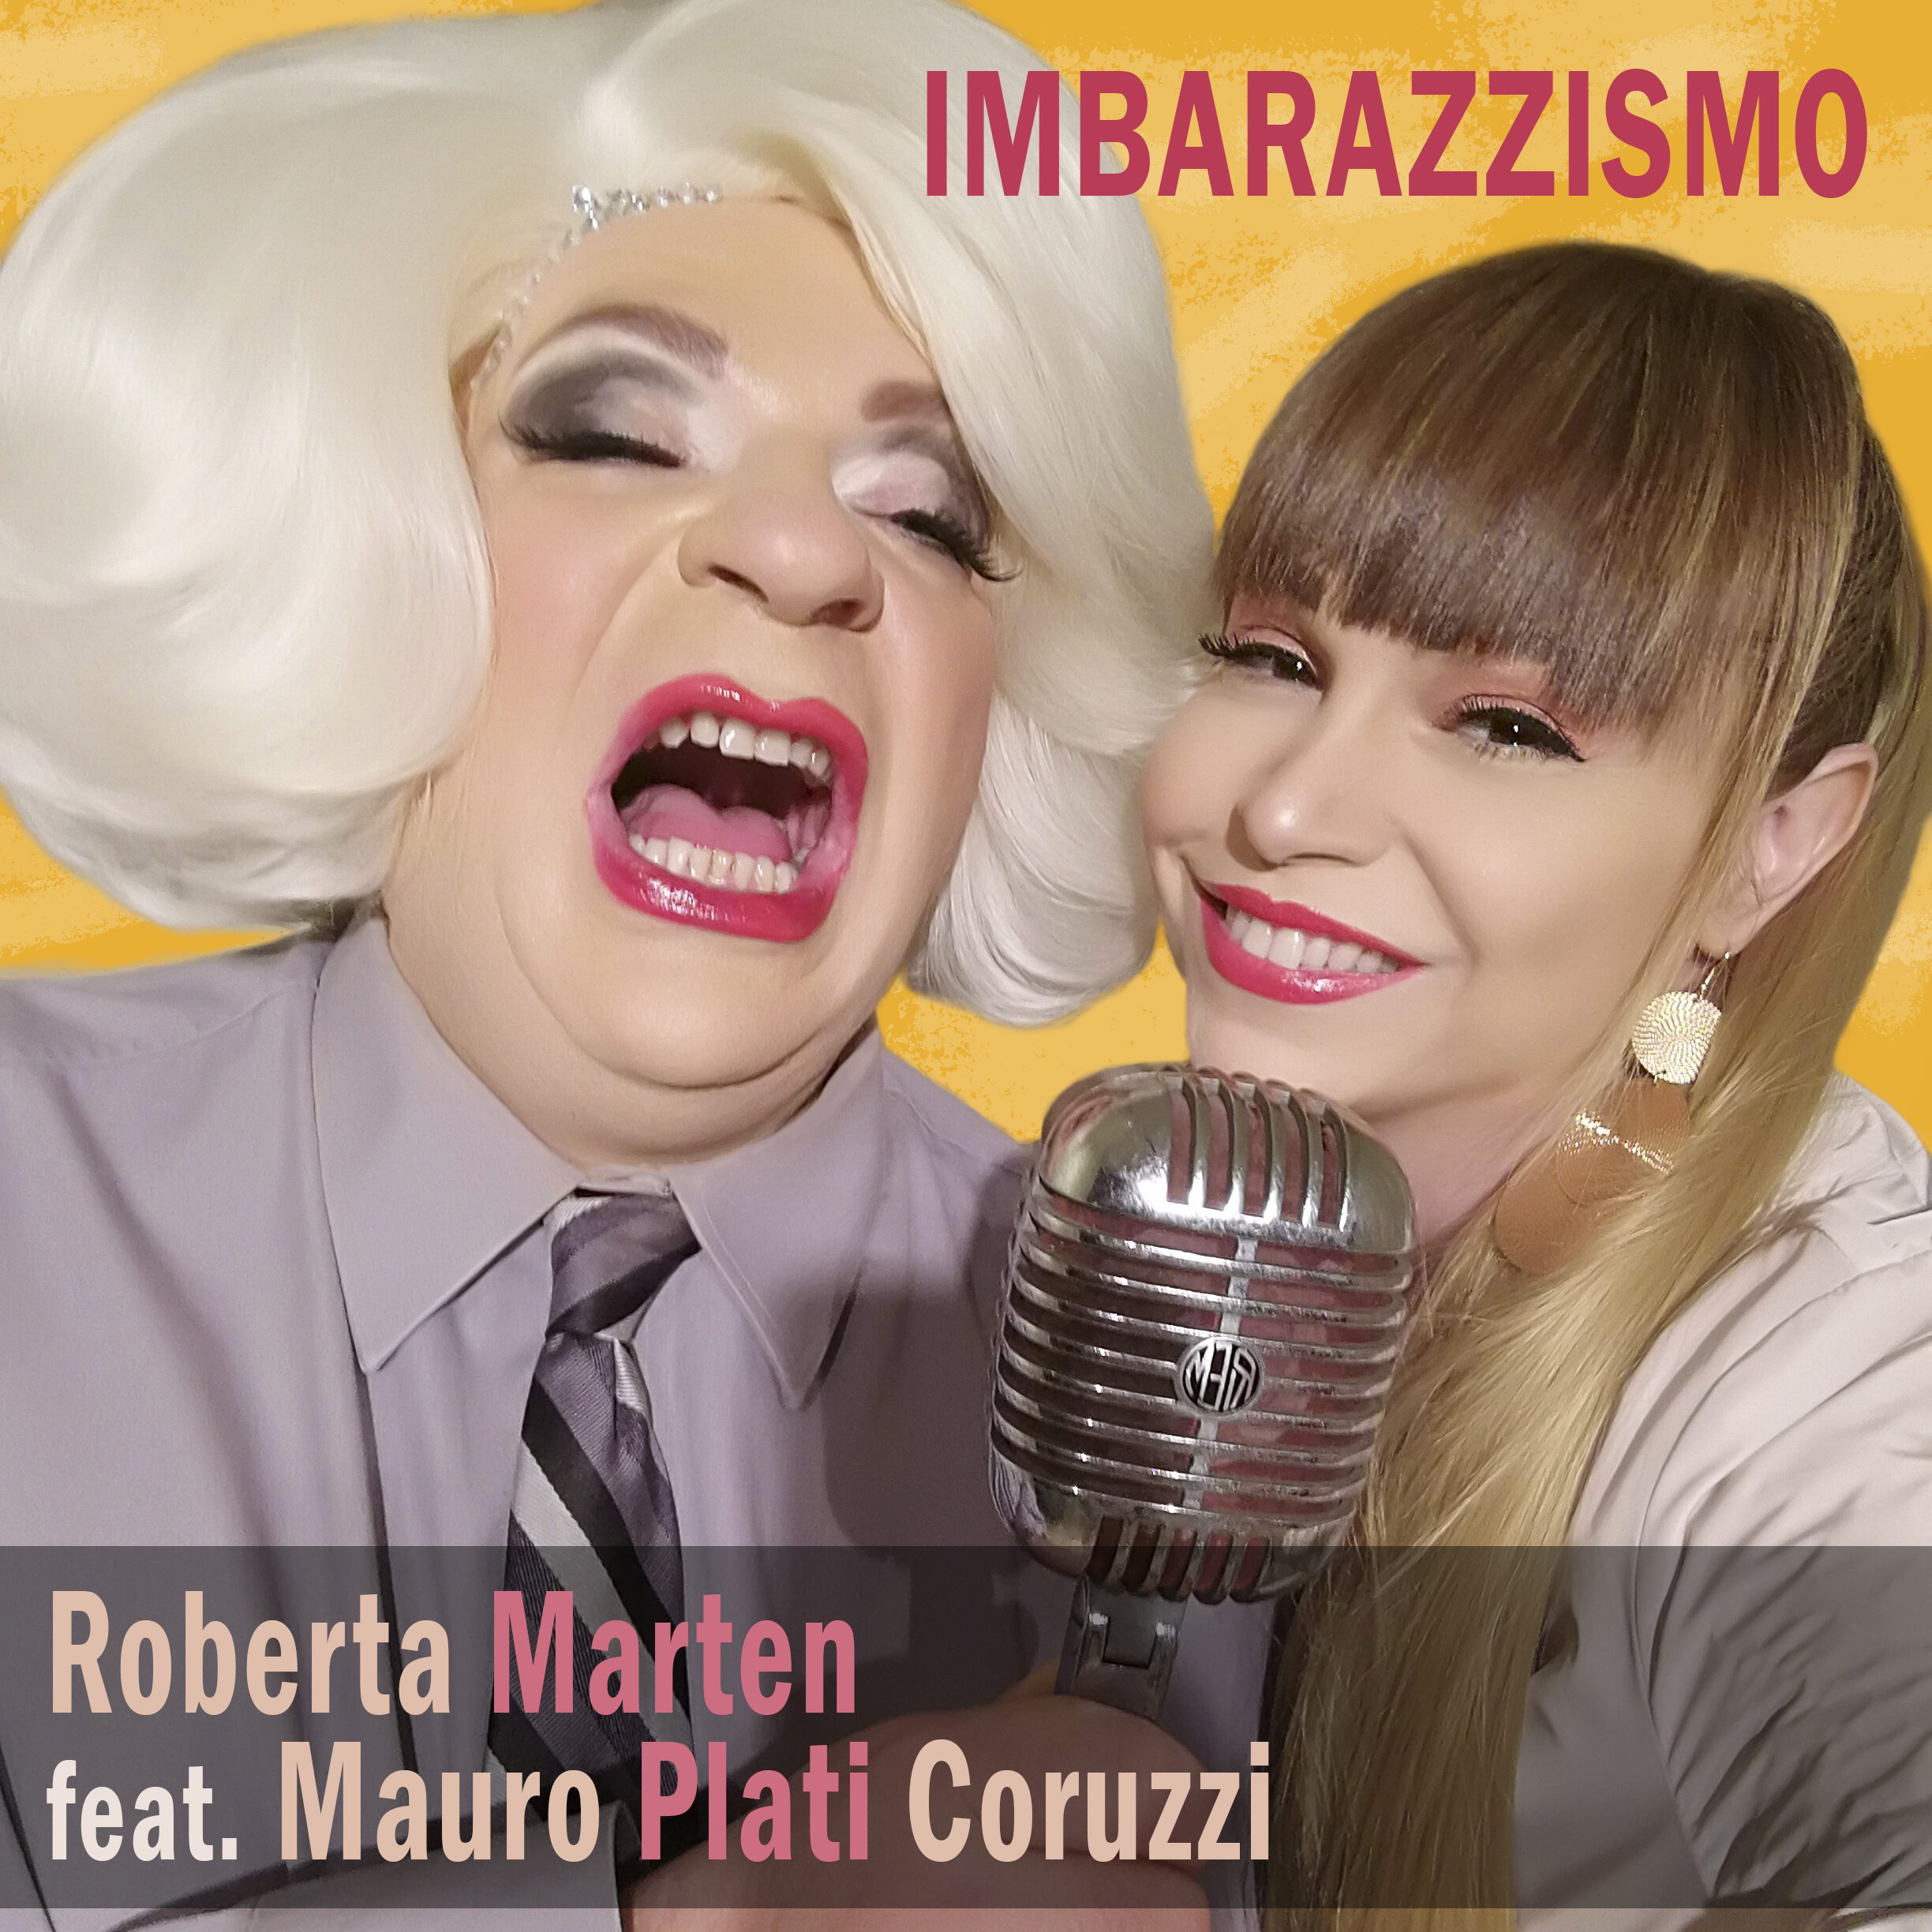  ROBERTA MARTEN feat MAURO PLATI CORUZZI “IMBARAZZISMO” ecco il video nato dalla collaborazione fra i due eclettici artisti